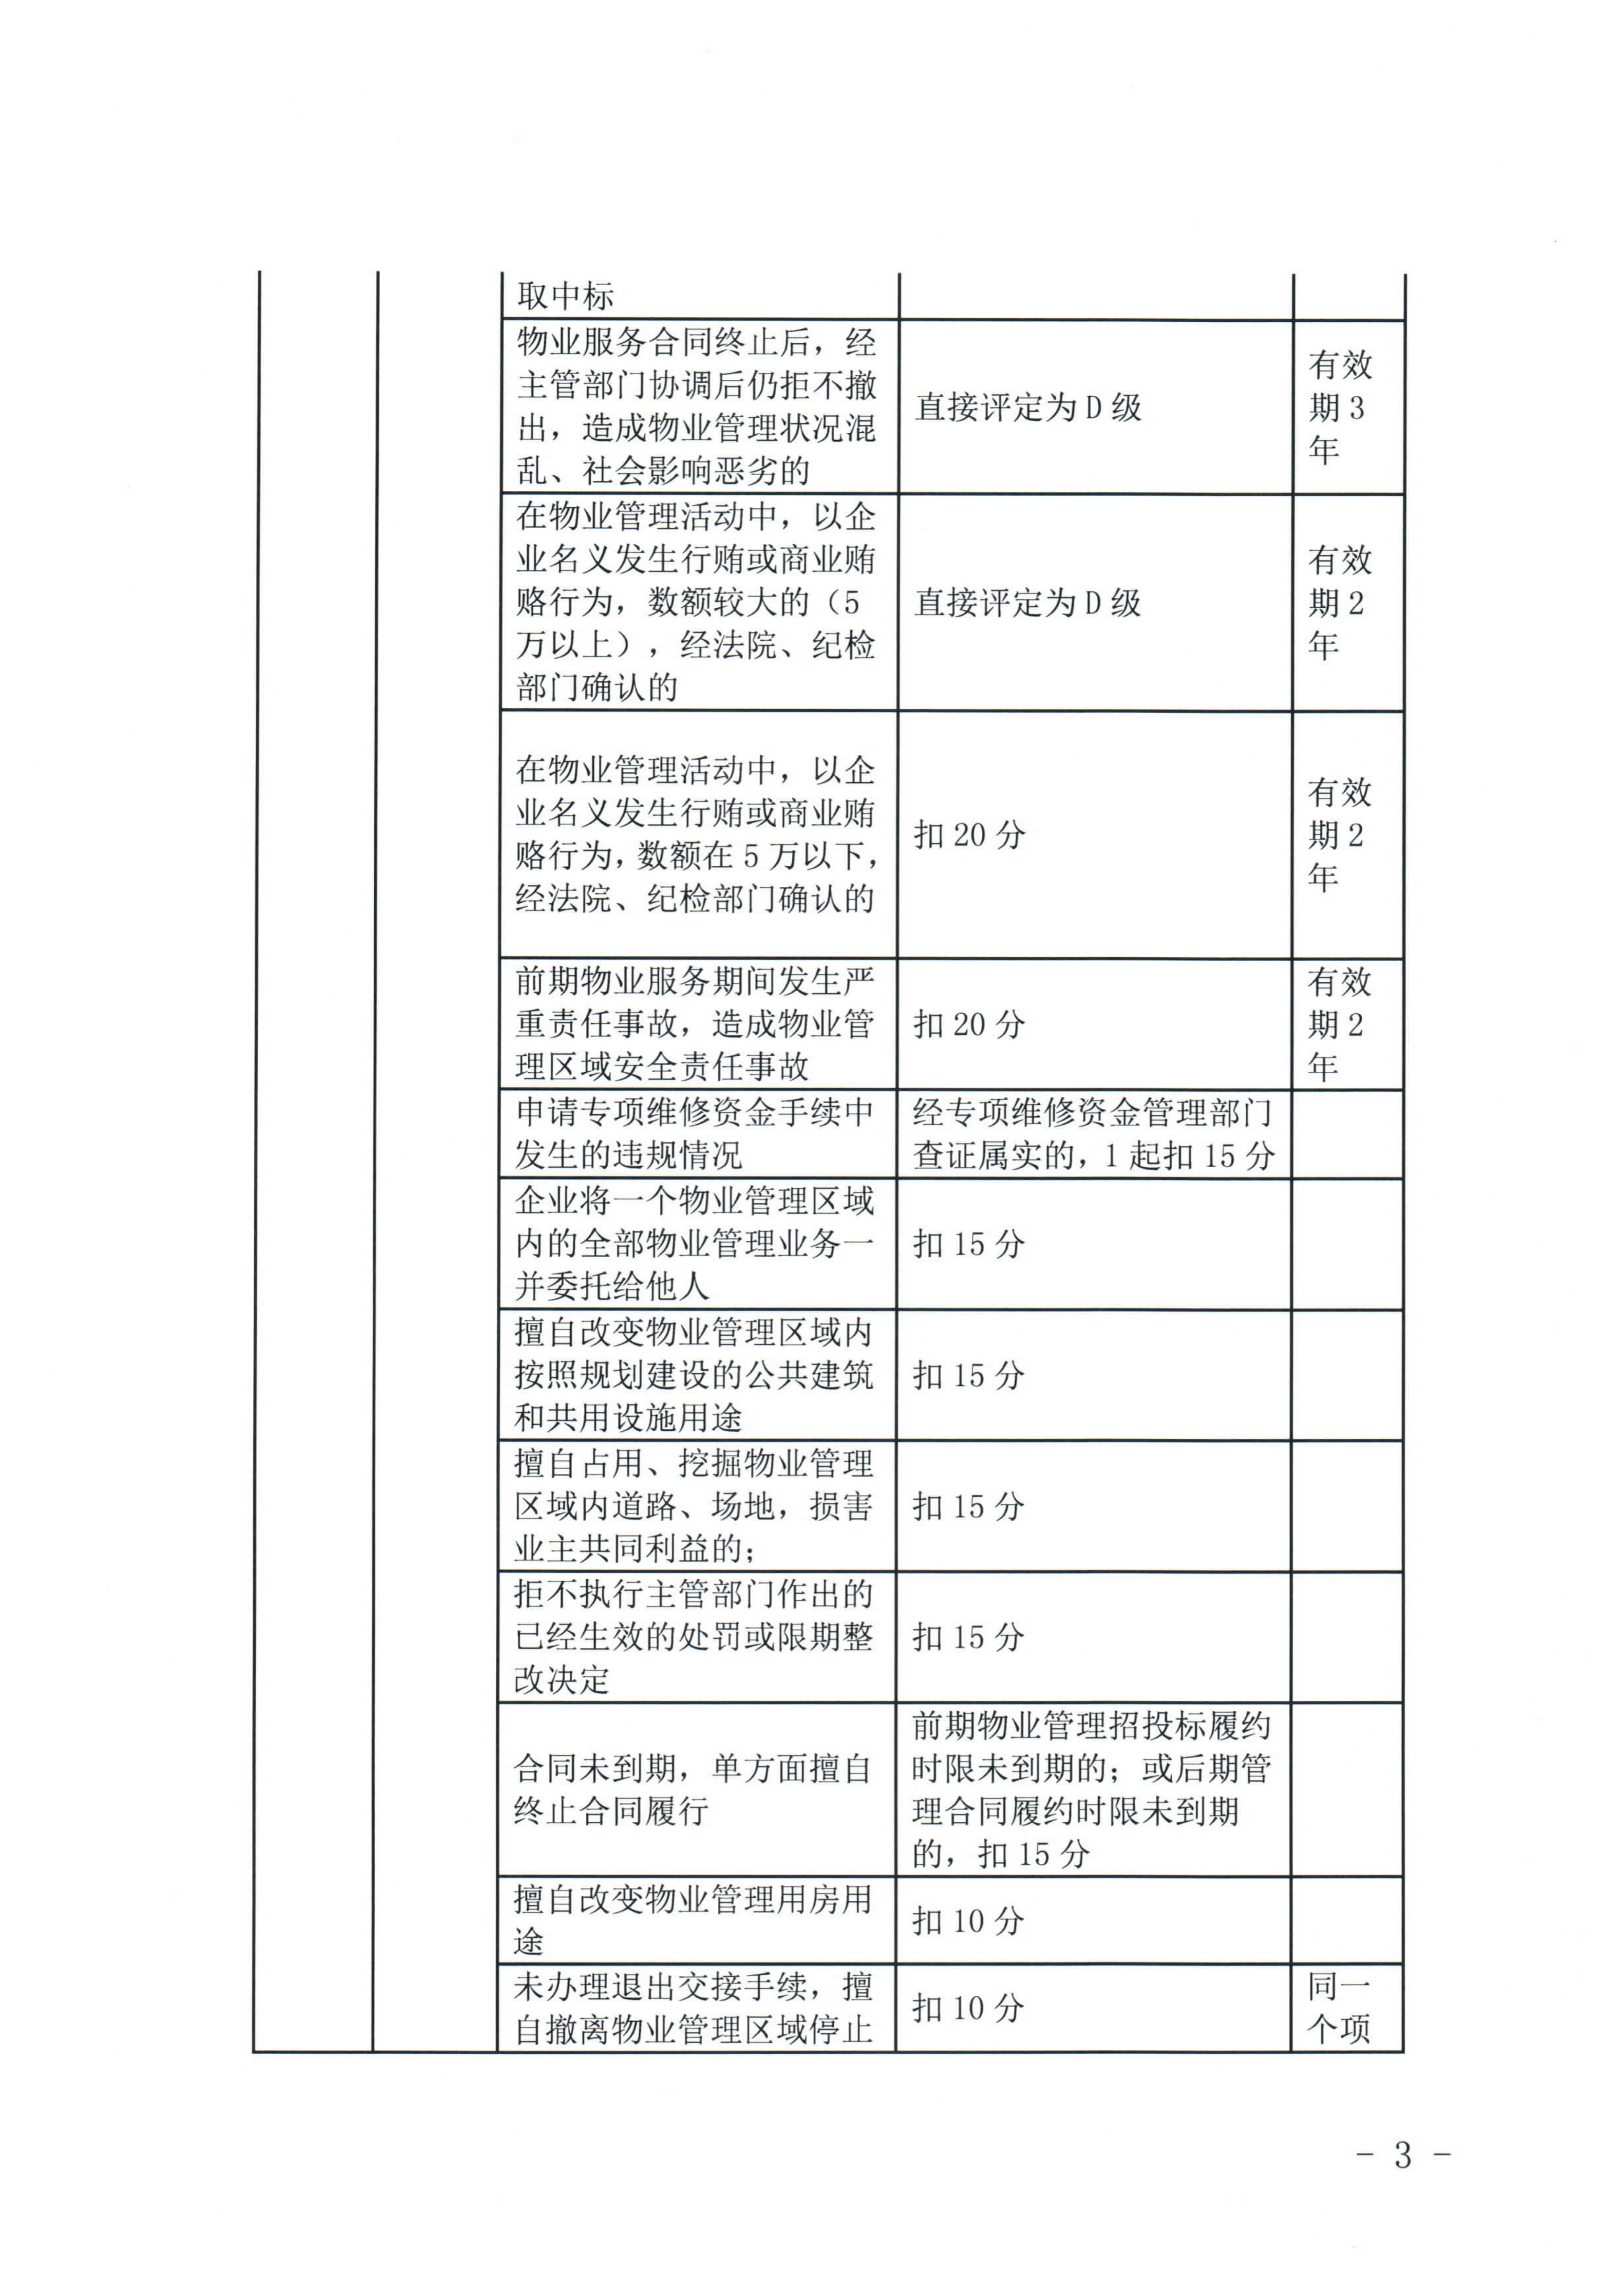 惠州市物业管理协会关于印发《惠州市物业管理活动信用档案管理办法》的通知_19.jpg